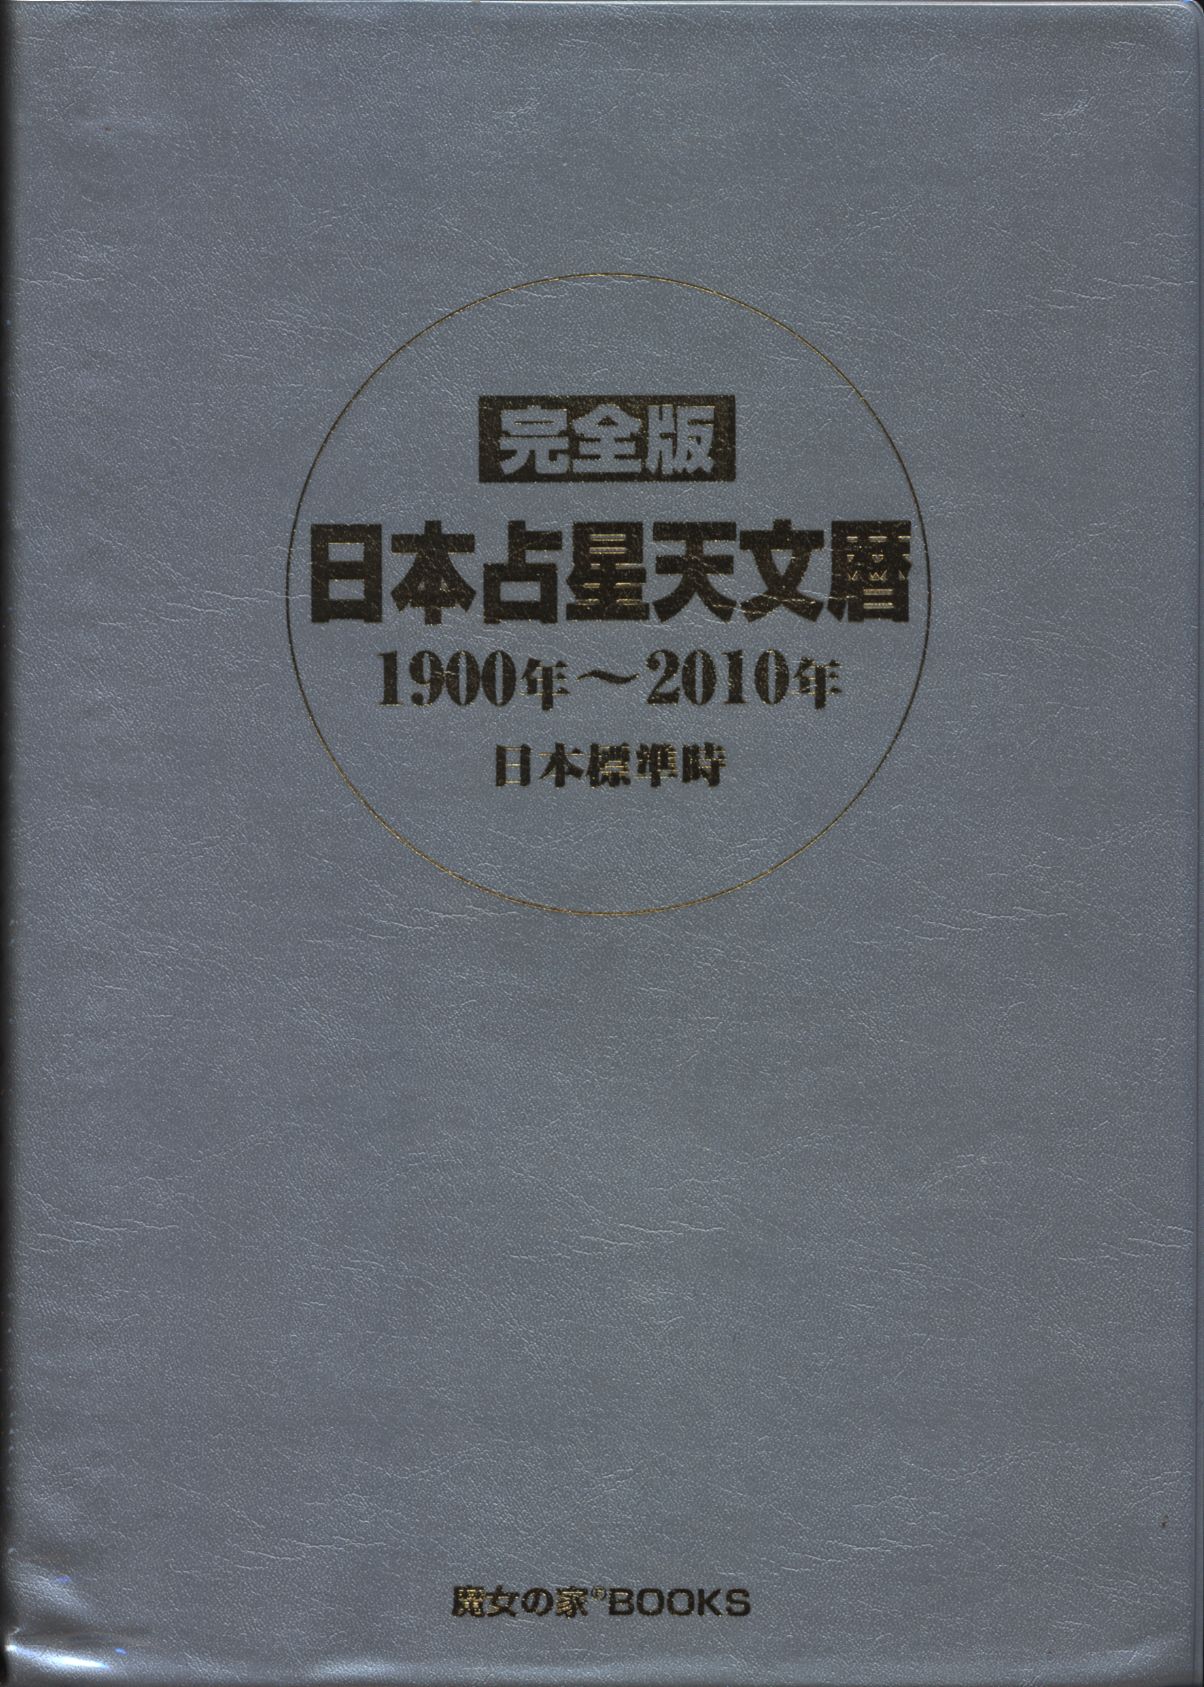 魔女の家ブックス 完全版 日本占星天文暦 1900年~2010年 | まんだらけ Mandarake